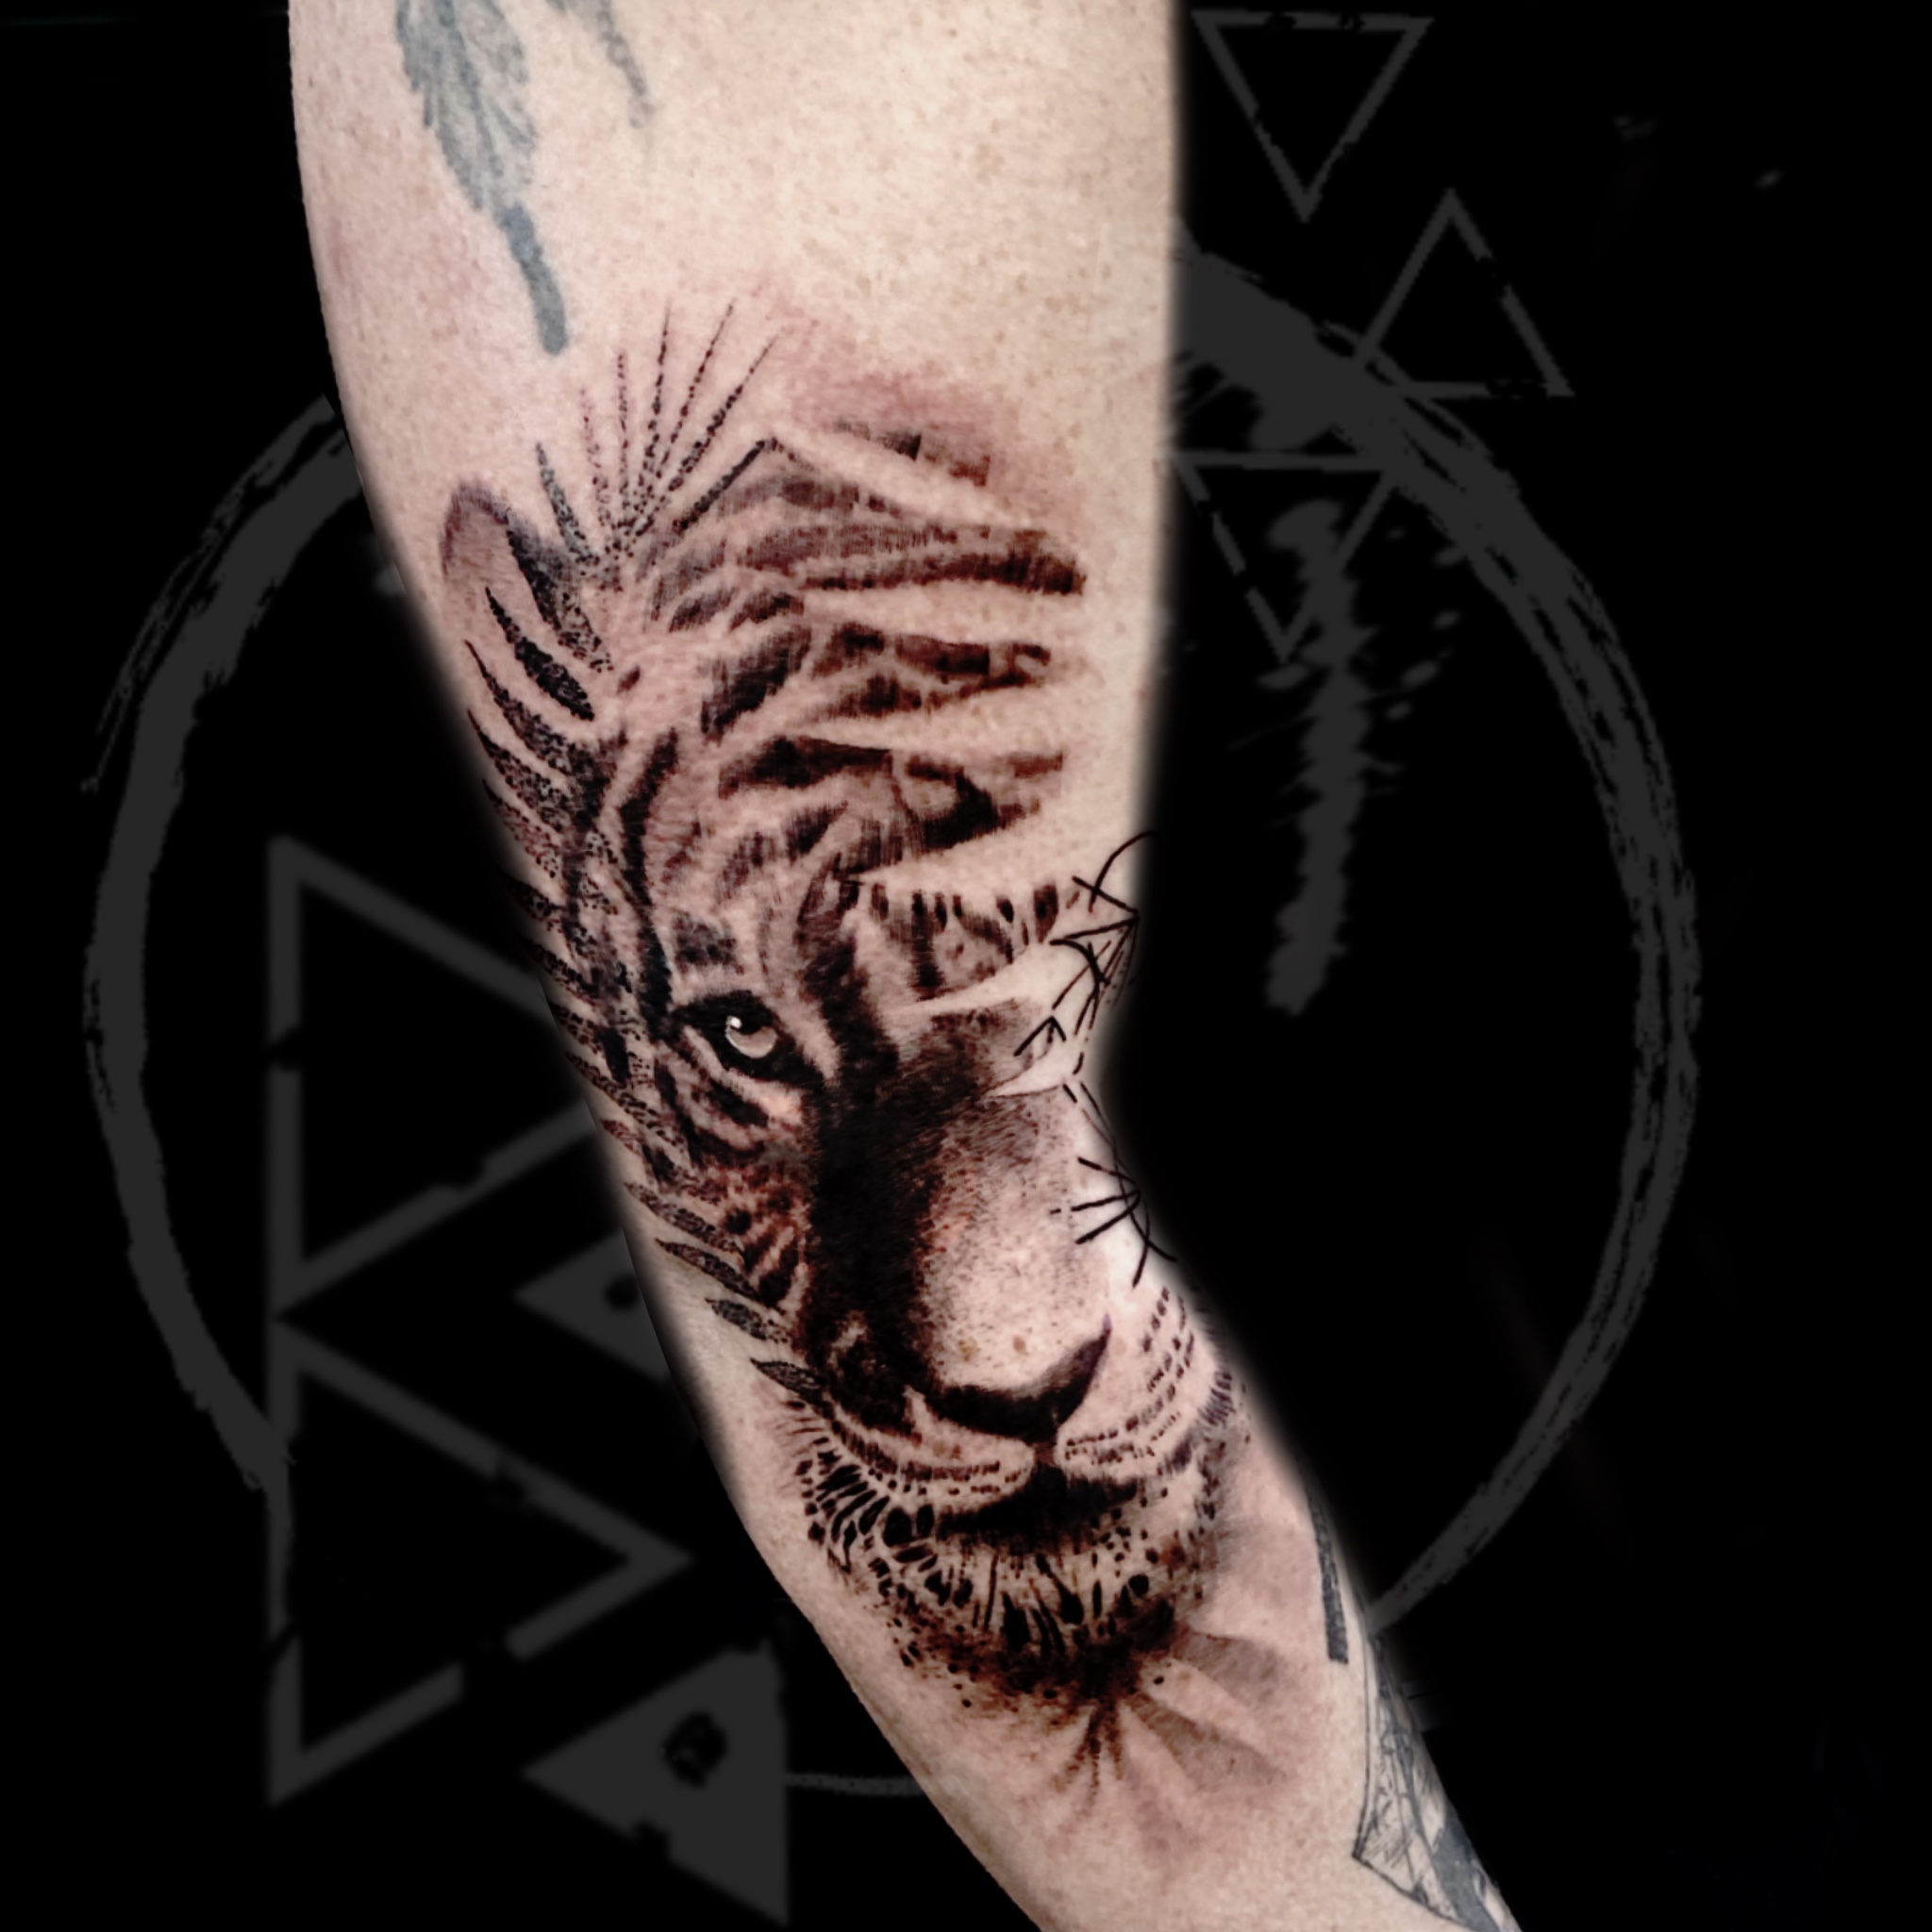 Modern Realism Tattoo, Black And Grey Tattoo, Contemporary Tattoo, Mixed Media Tattoo, Amsterdam Tattoo